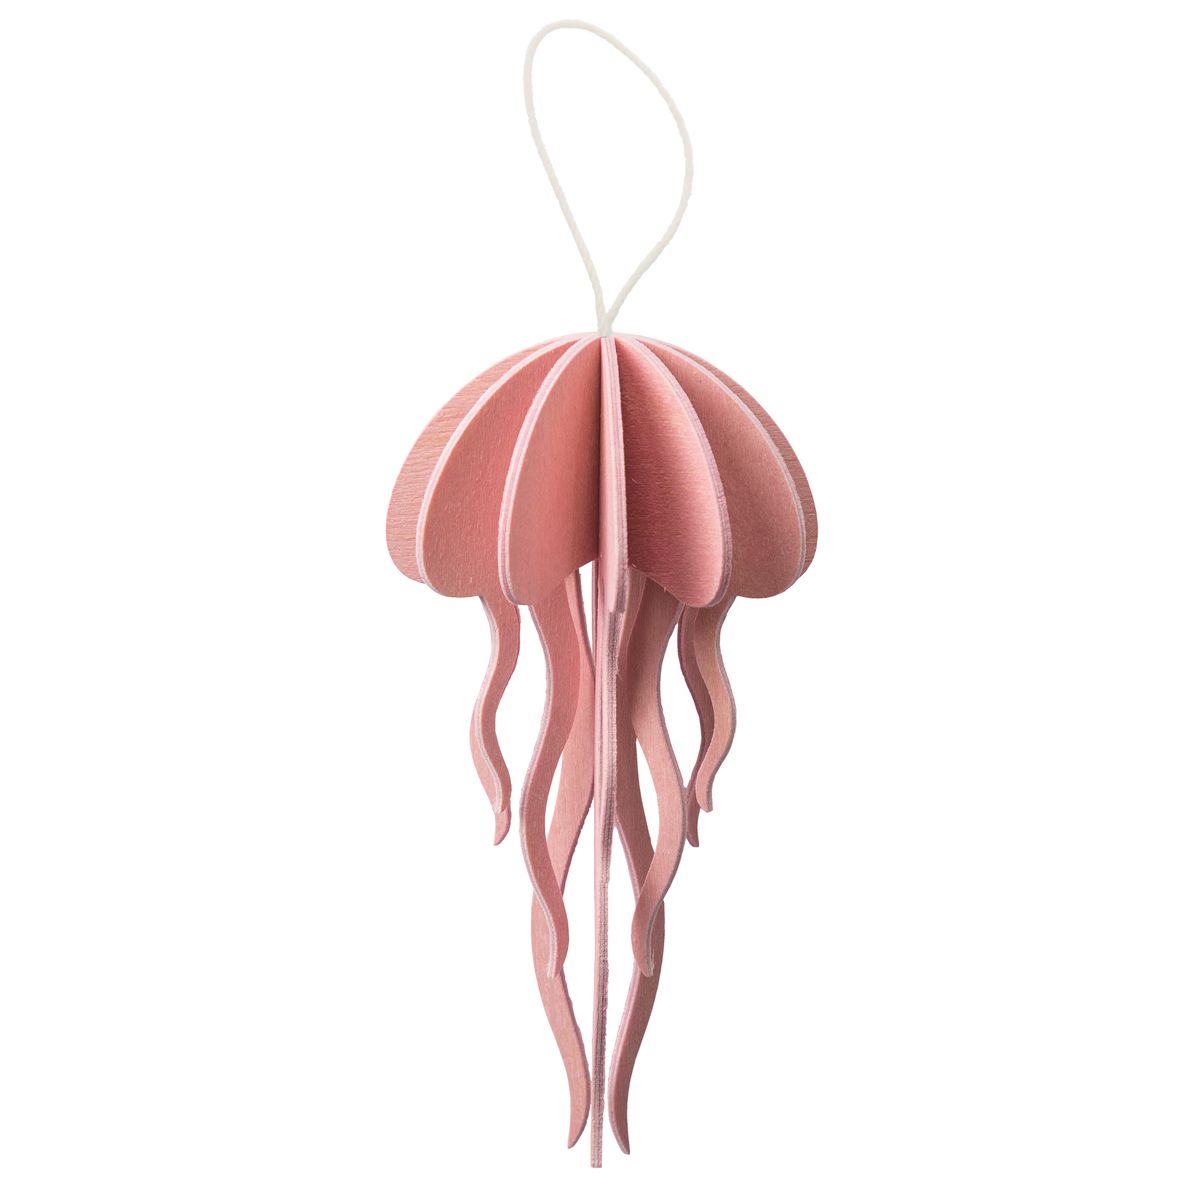 La méduse : carte pour construire un 3D en bois (S – rose clair)